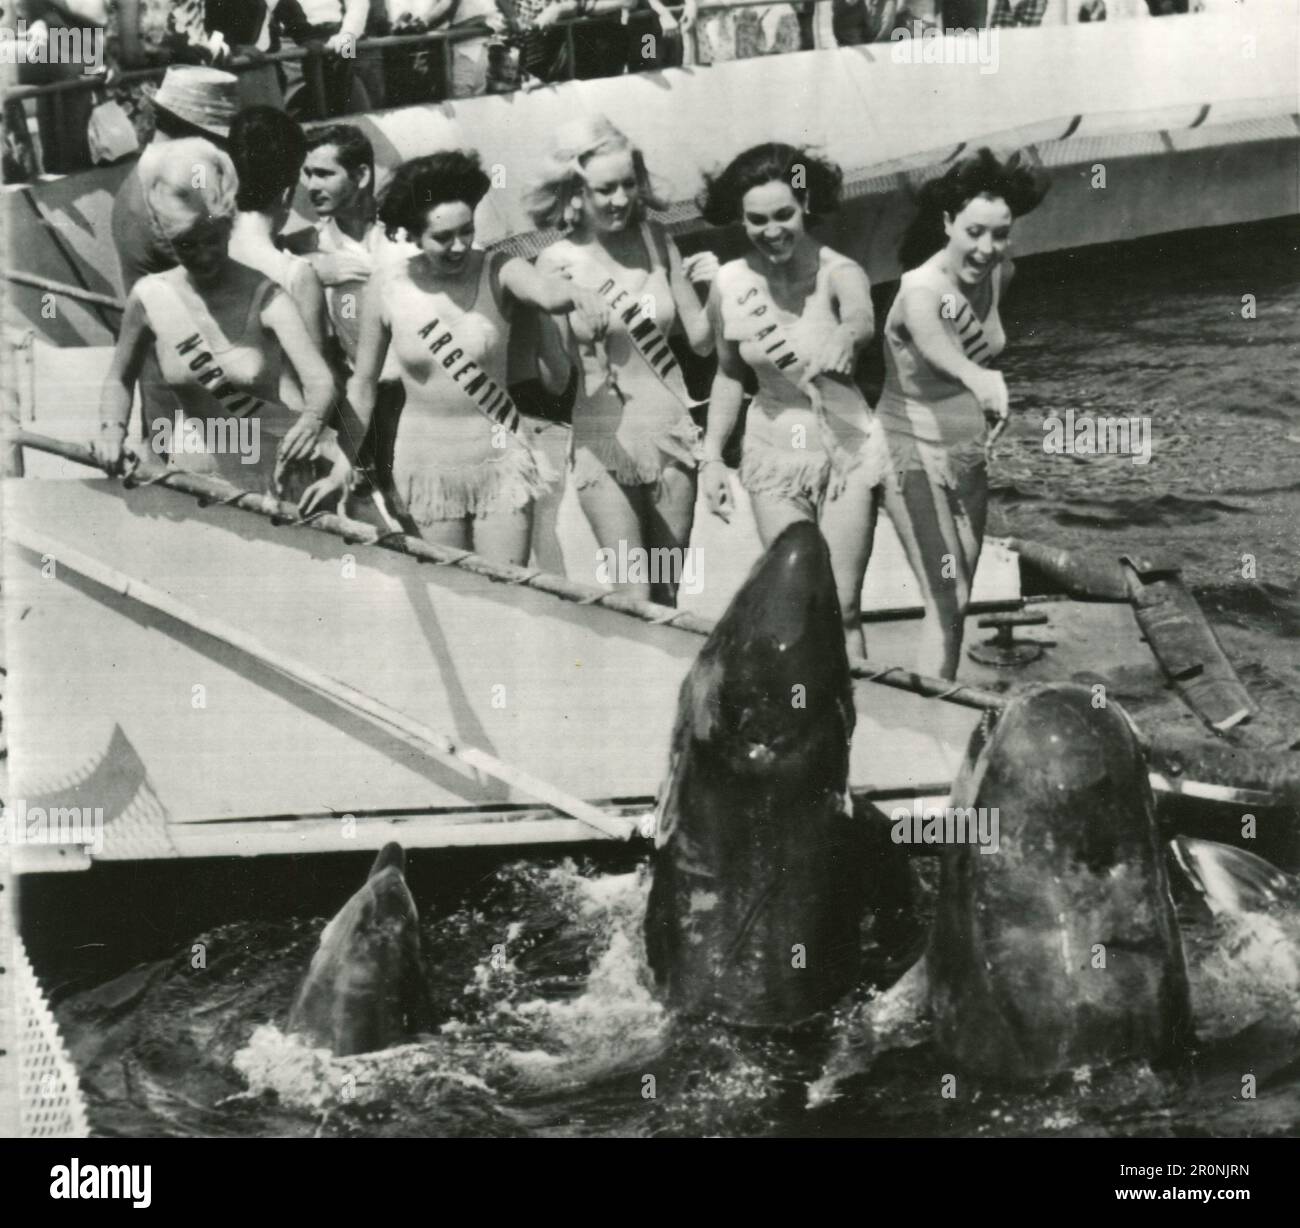 Le ragazze del mondo concorso di bellezza nutrire i dalphins, 1950s Foto Stock